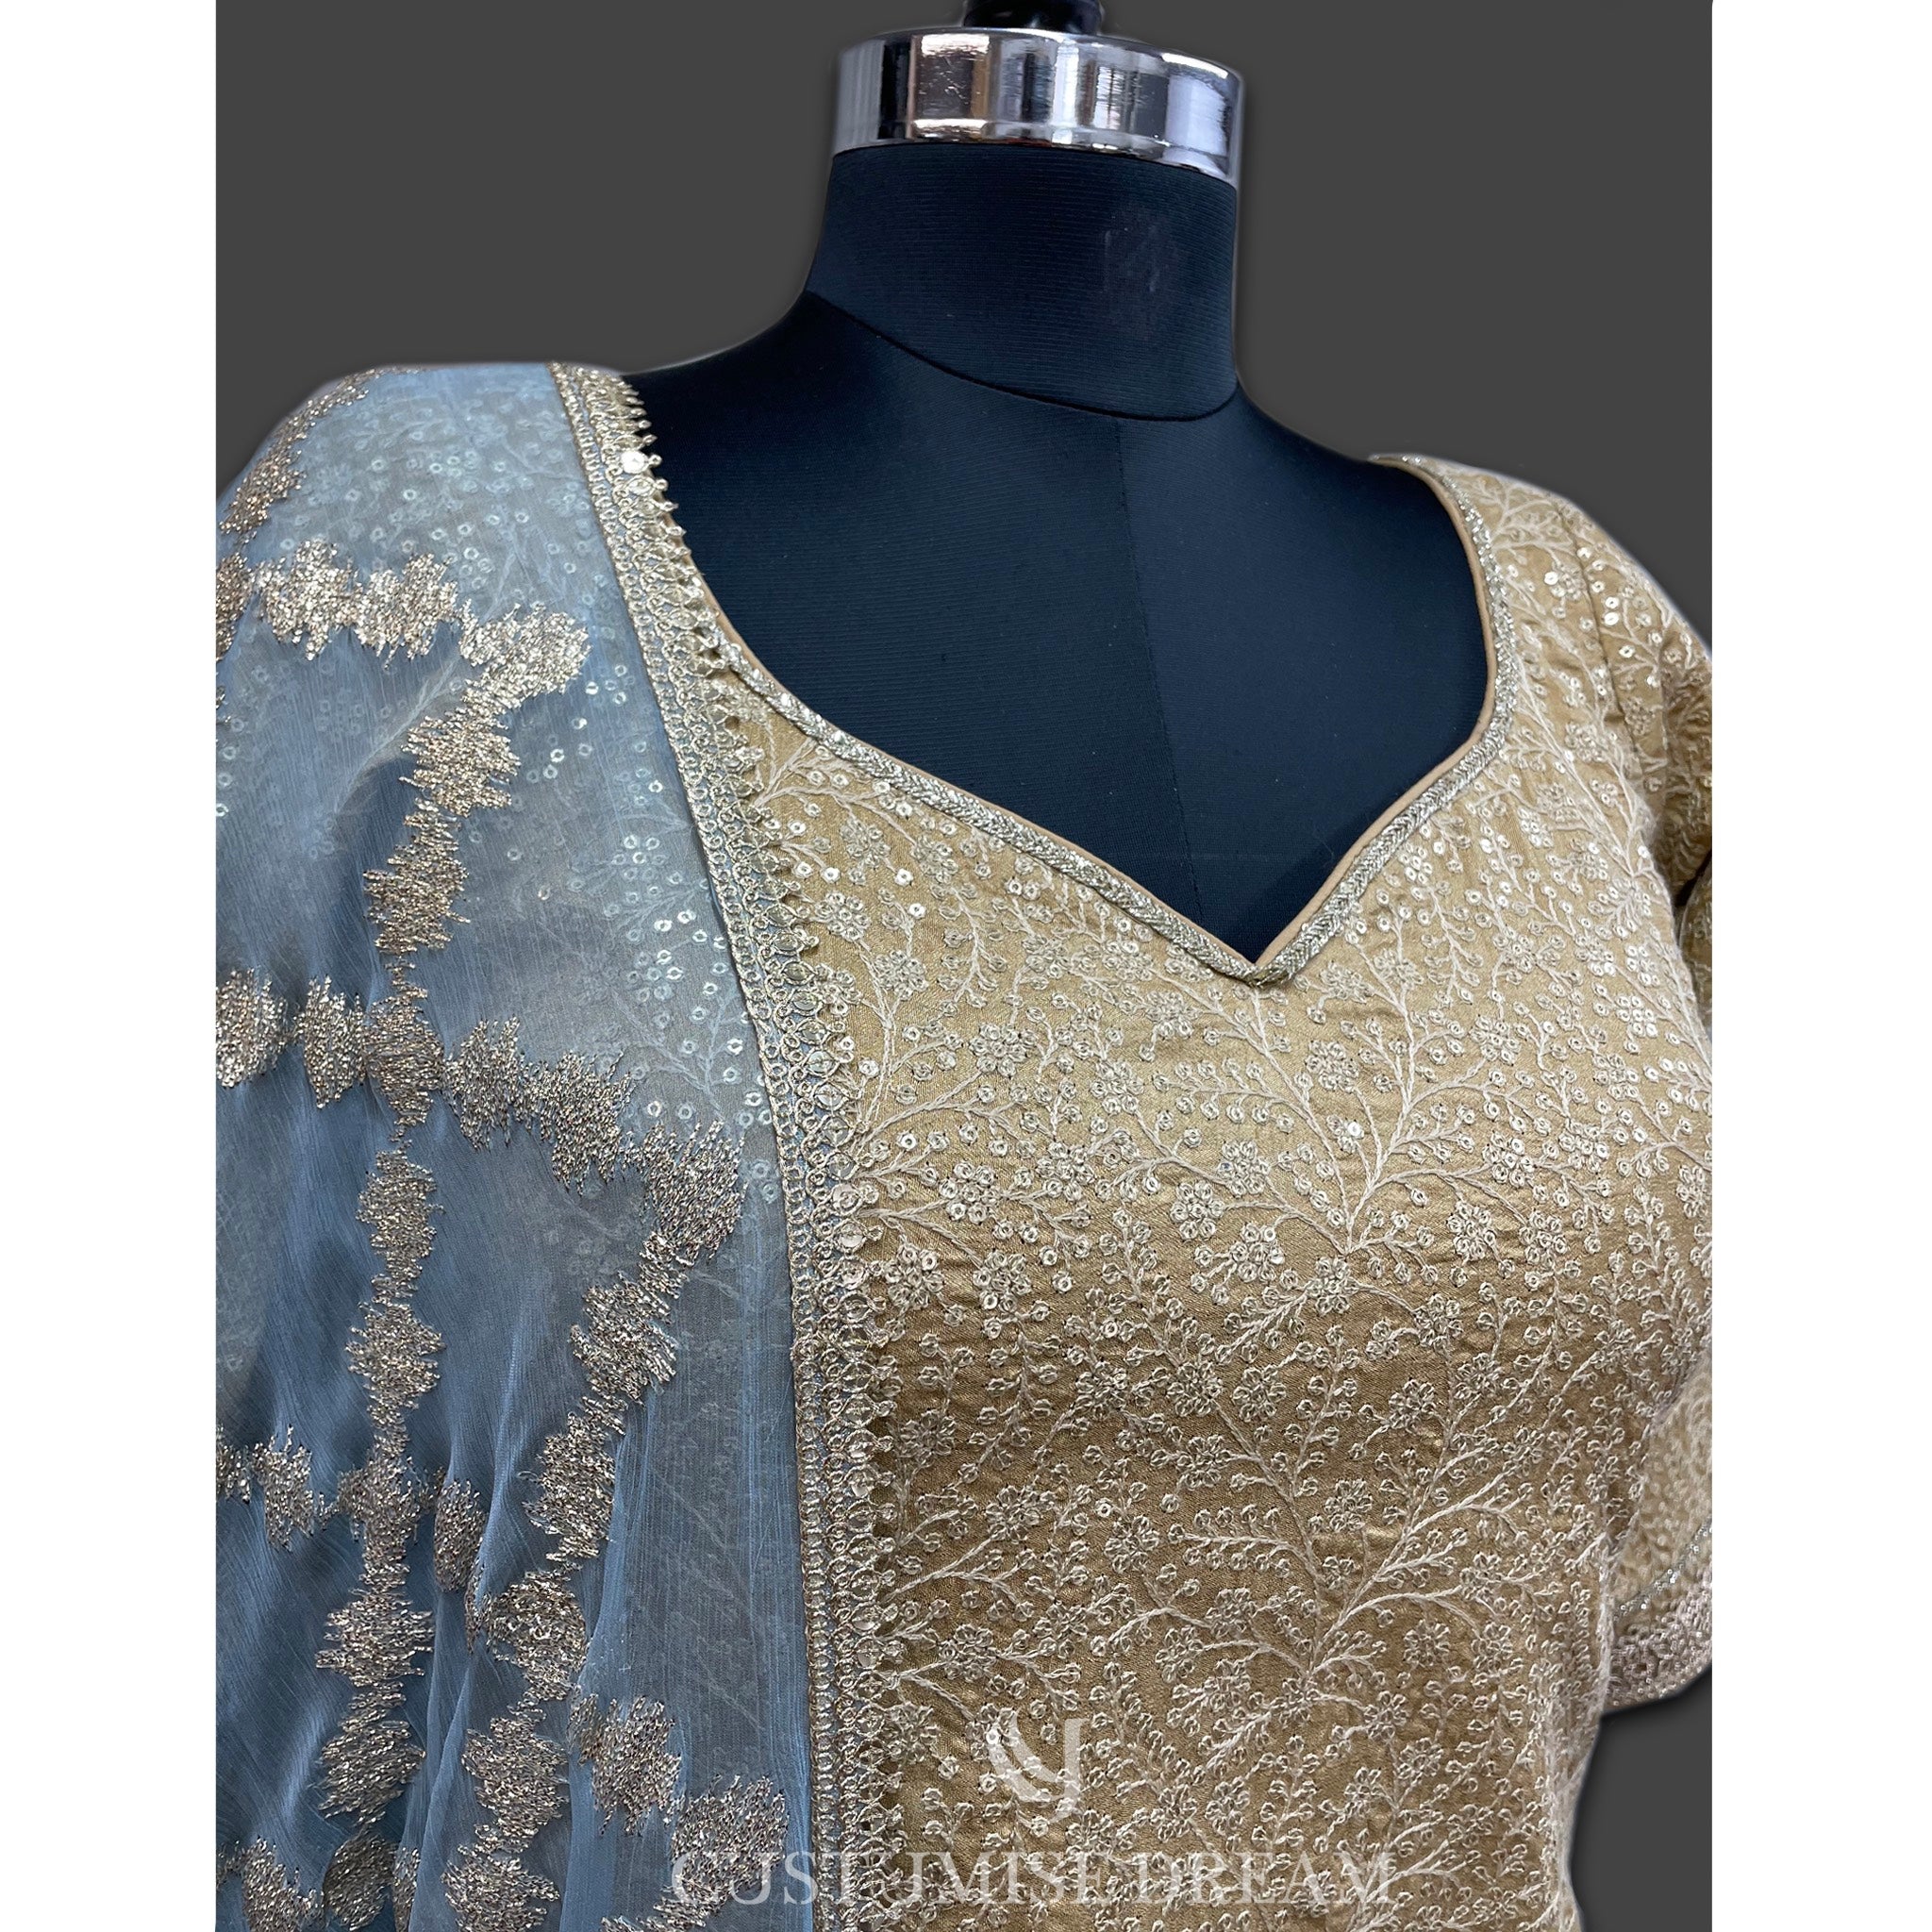 Golden Elegance: Embroidered Sharara Set - Indian Designer Bridal Wedding Outfit